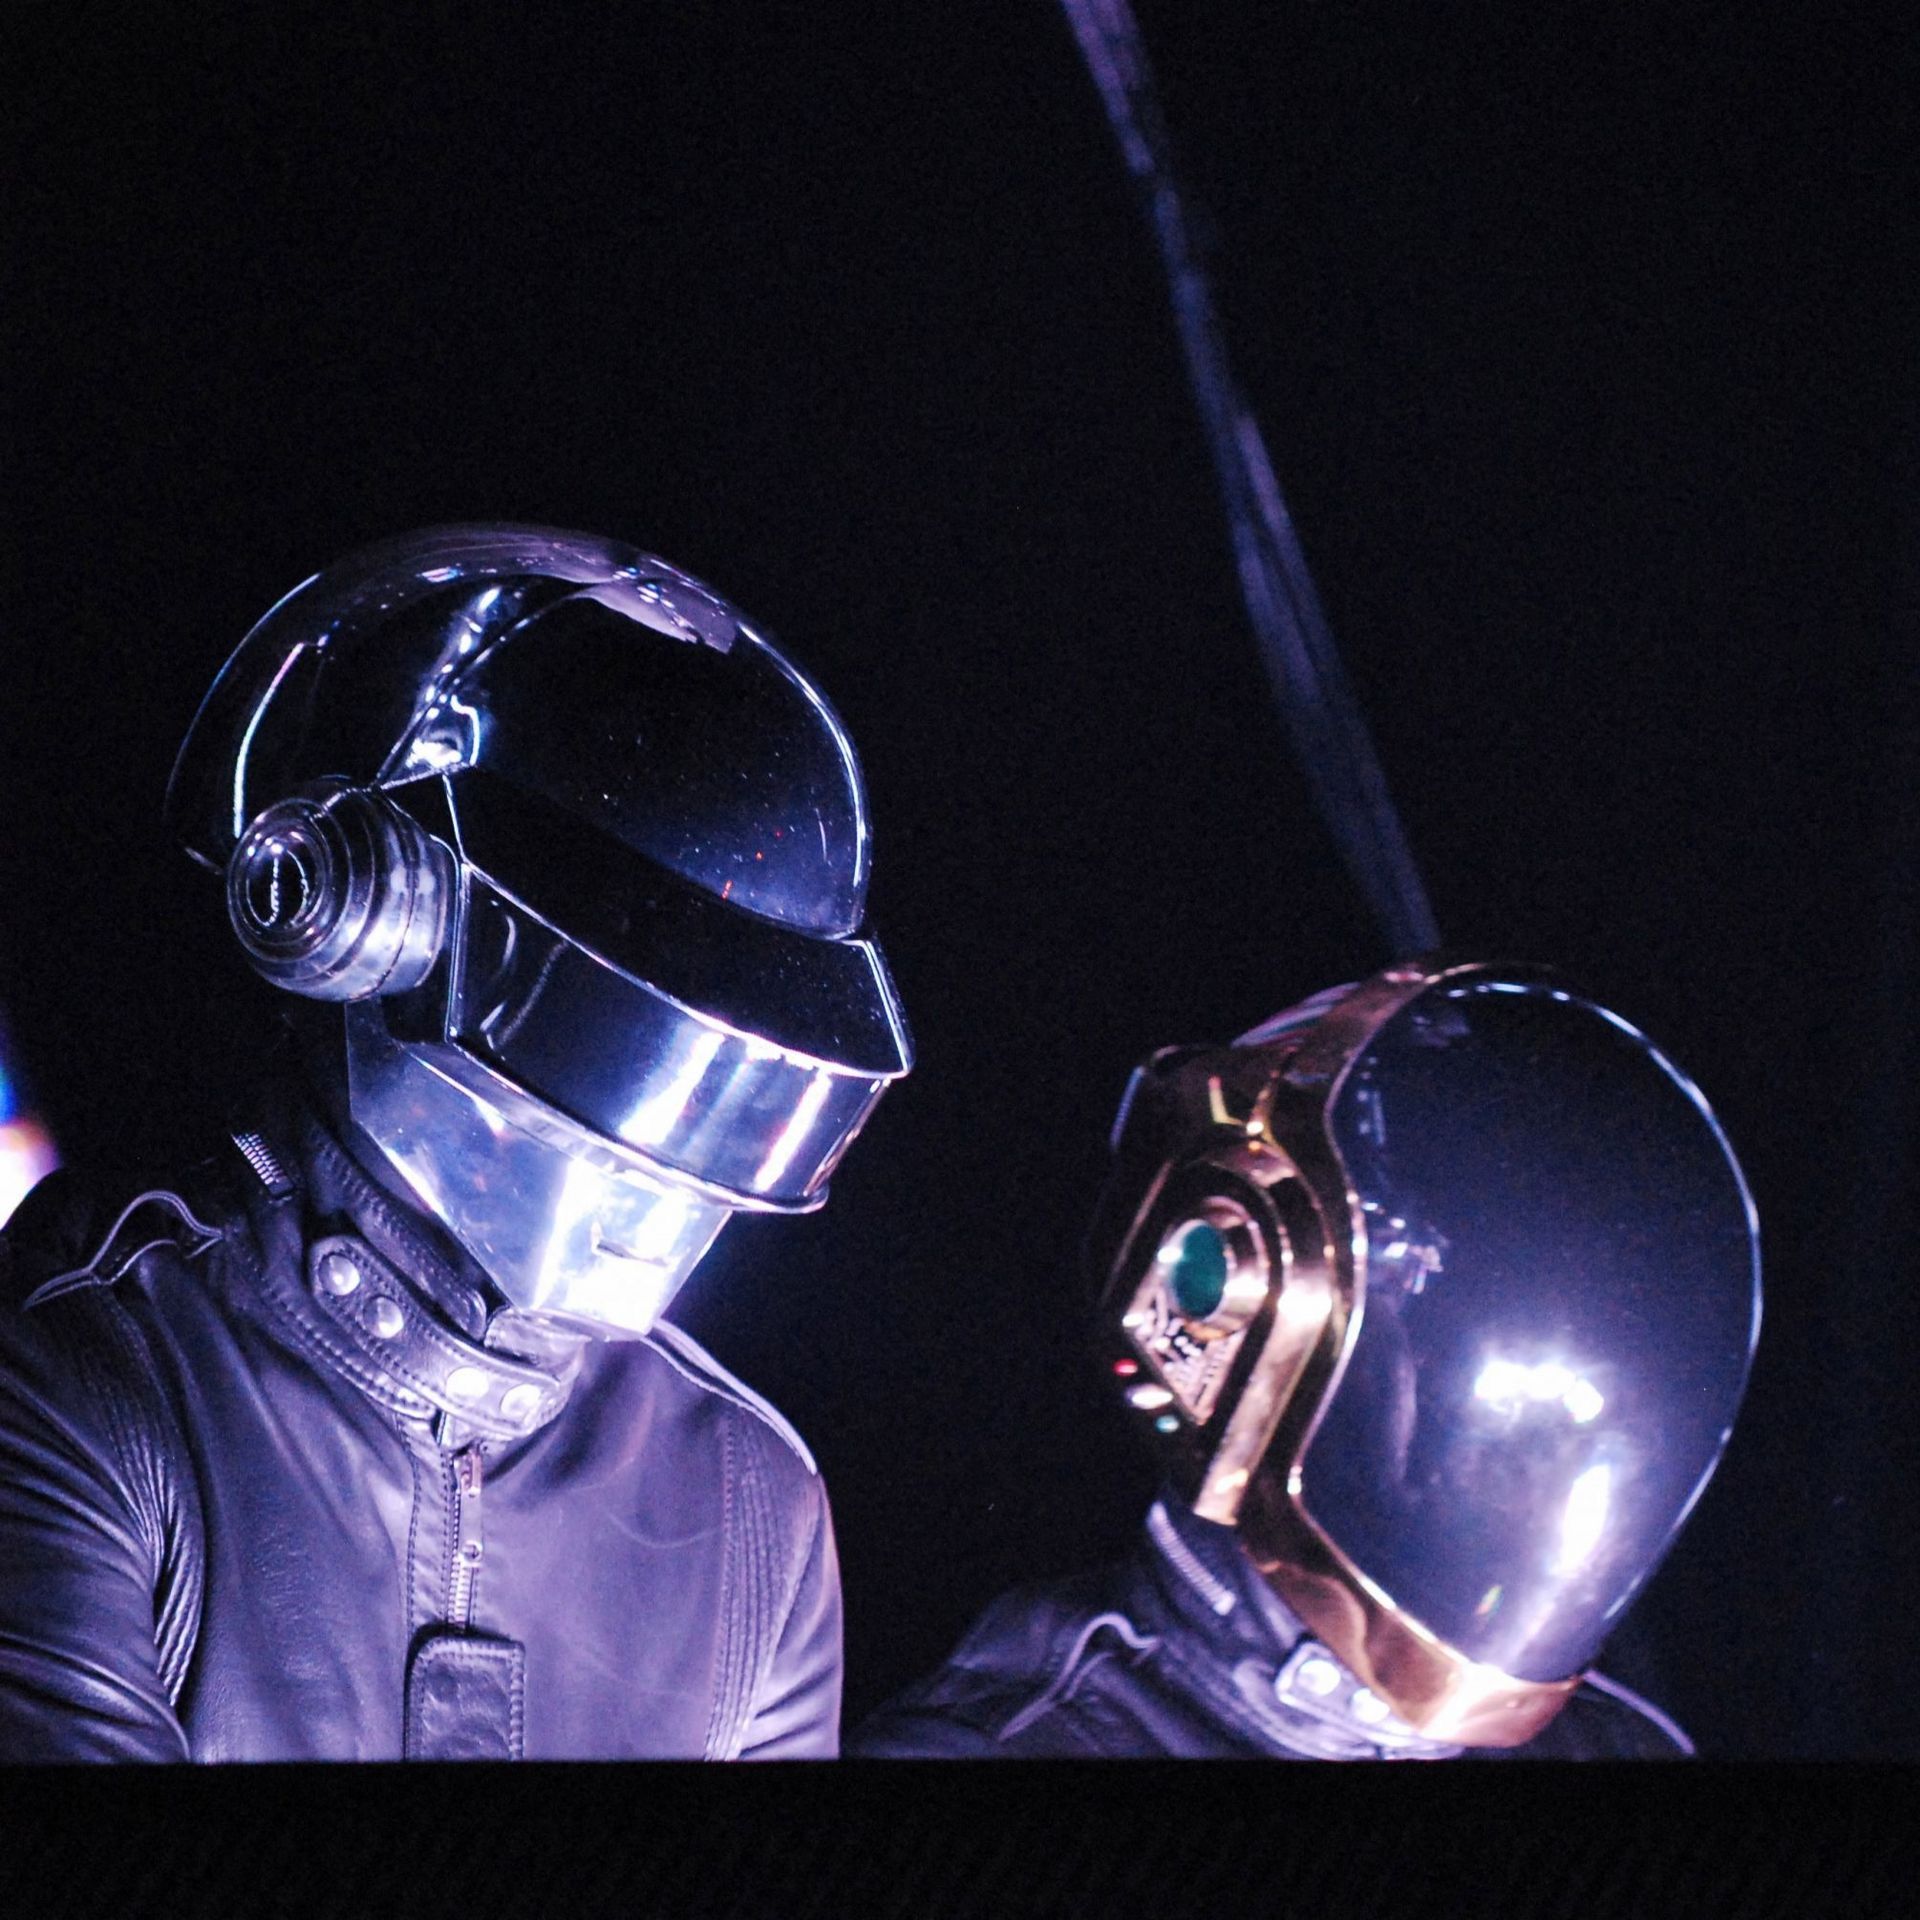 Cette photo d'archive datée du 14 juin 2007 montre le groupe français Daft Punk, portant des casques, alors qu'ils se produisent sur scène au Palais omnisport de Bercy à Paris.